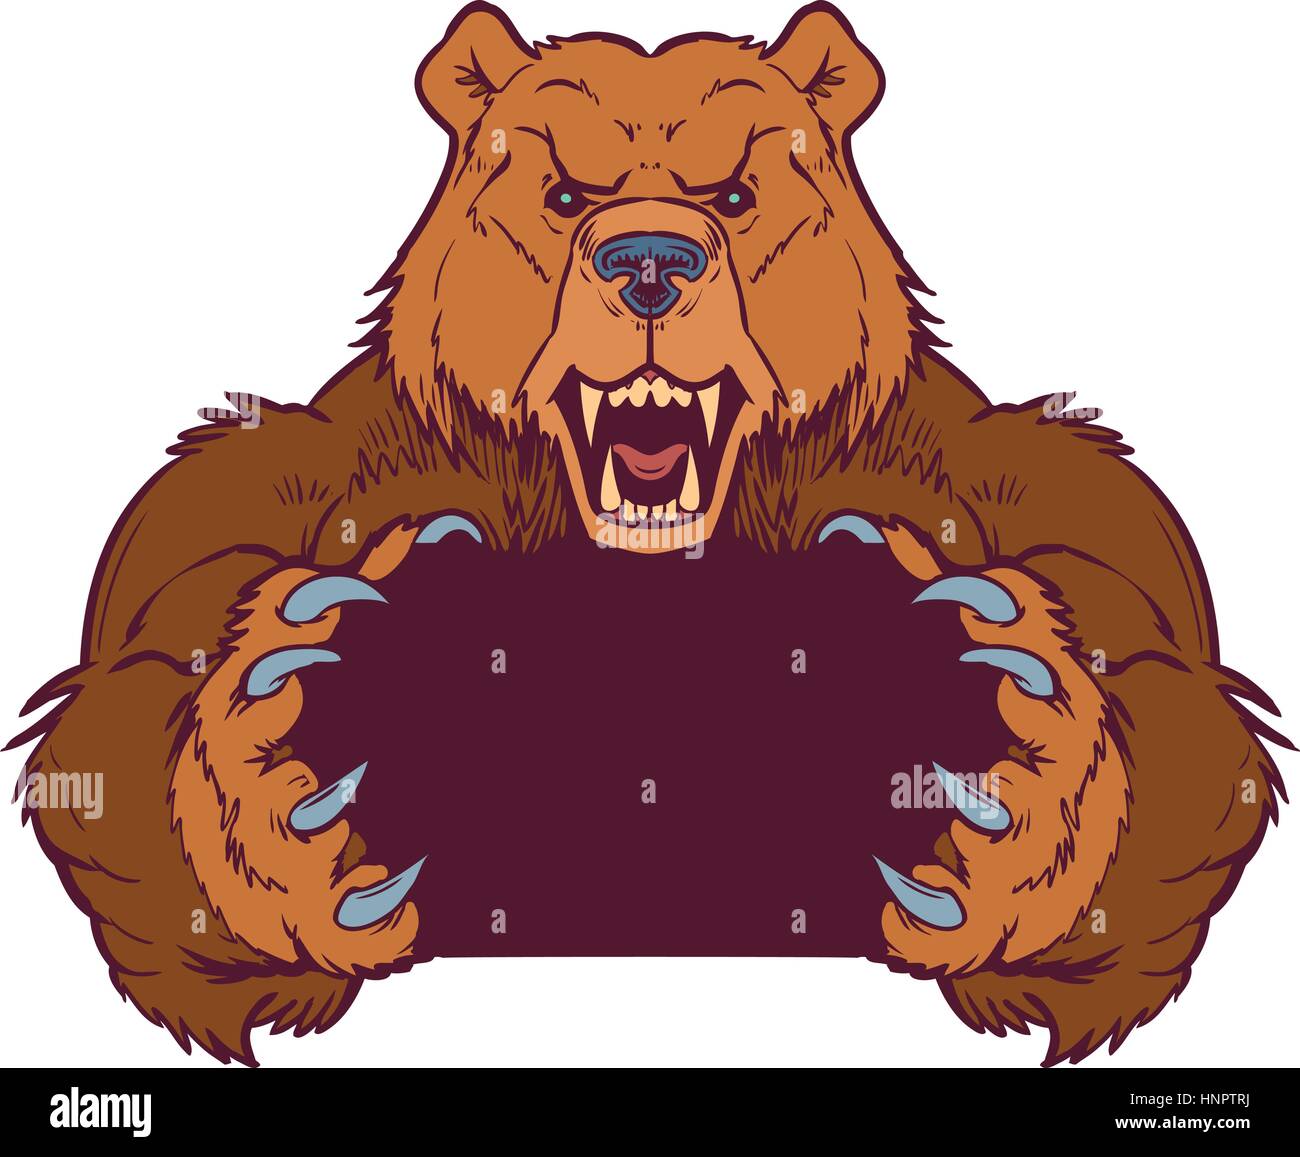 Vettore di Cartoon clip art modello di illustrazione di un orso bruno mascotte holding o presa di spazio vuoto tra i suoi artigli. Livelli vettoriali sono impostati per e Illustrazione Vettoriale